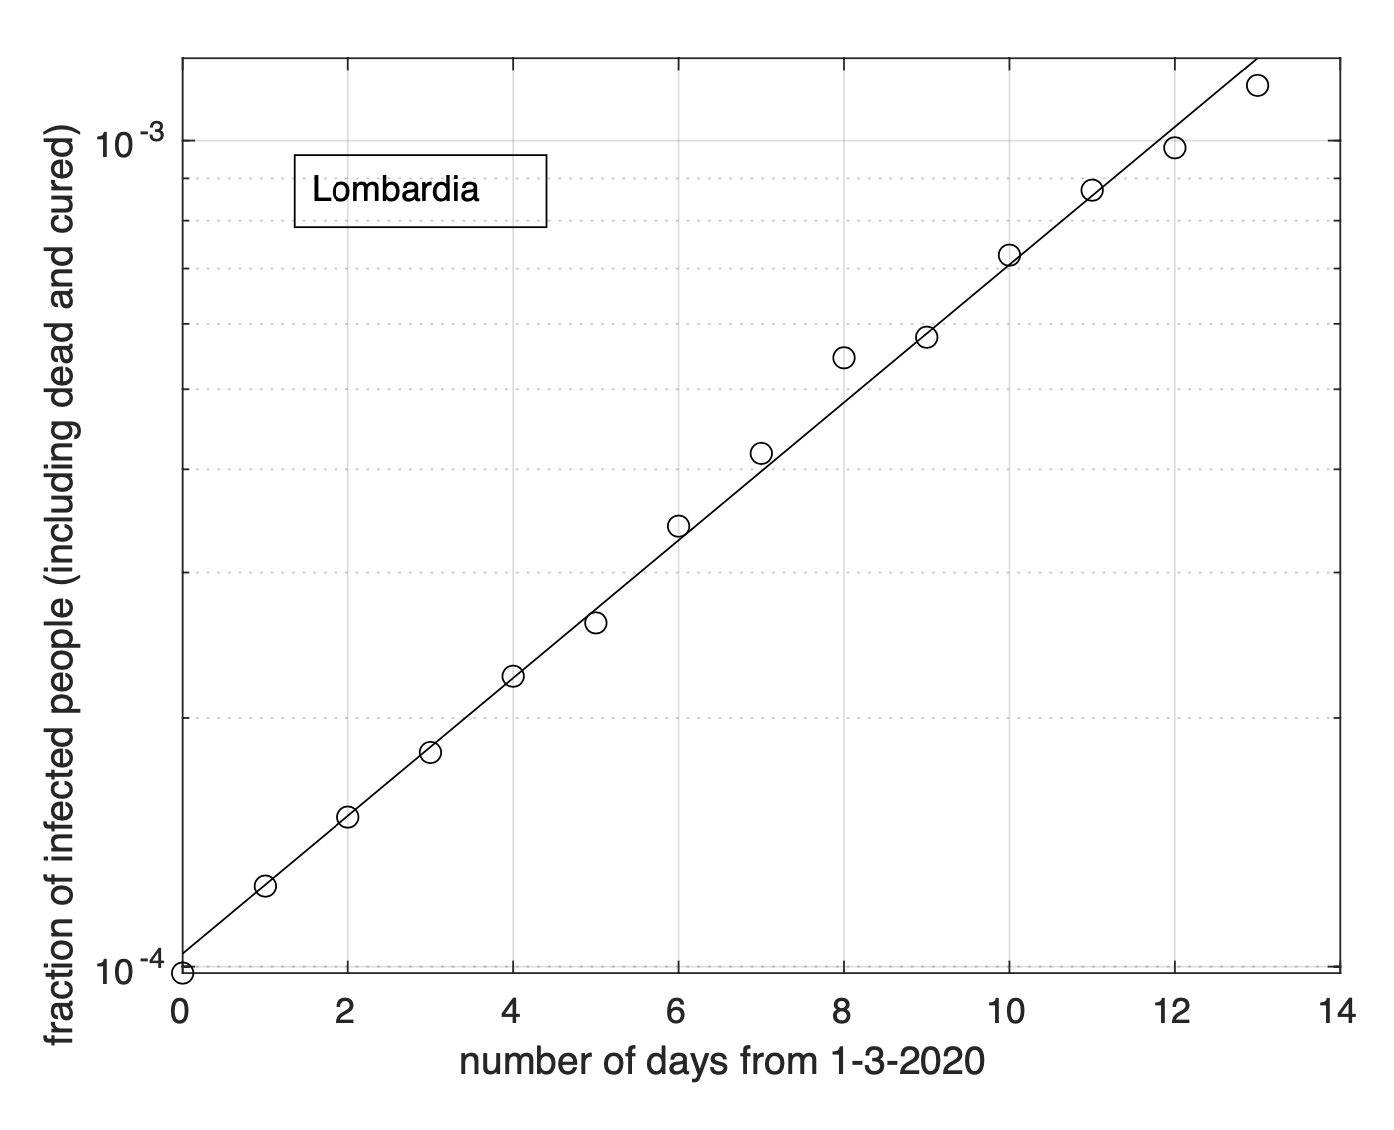  Frazione del numero di contagiati osservati in Lombardia rispetto alla popolazione della regione in funzione del tempo a partire dal 1 marzo ed in scala semi-logaritmica. La linea retta rappresenta il modello geometrico stimato a partire dai dati. Notiamo un buon adattamento dei dati al modello teorico.